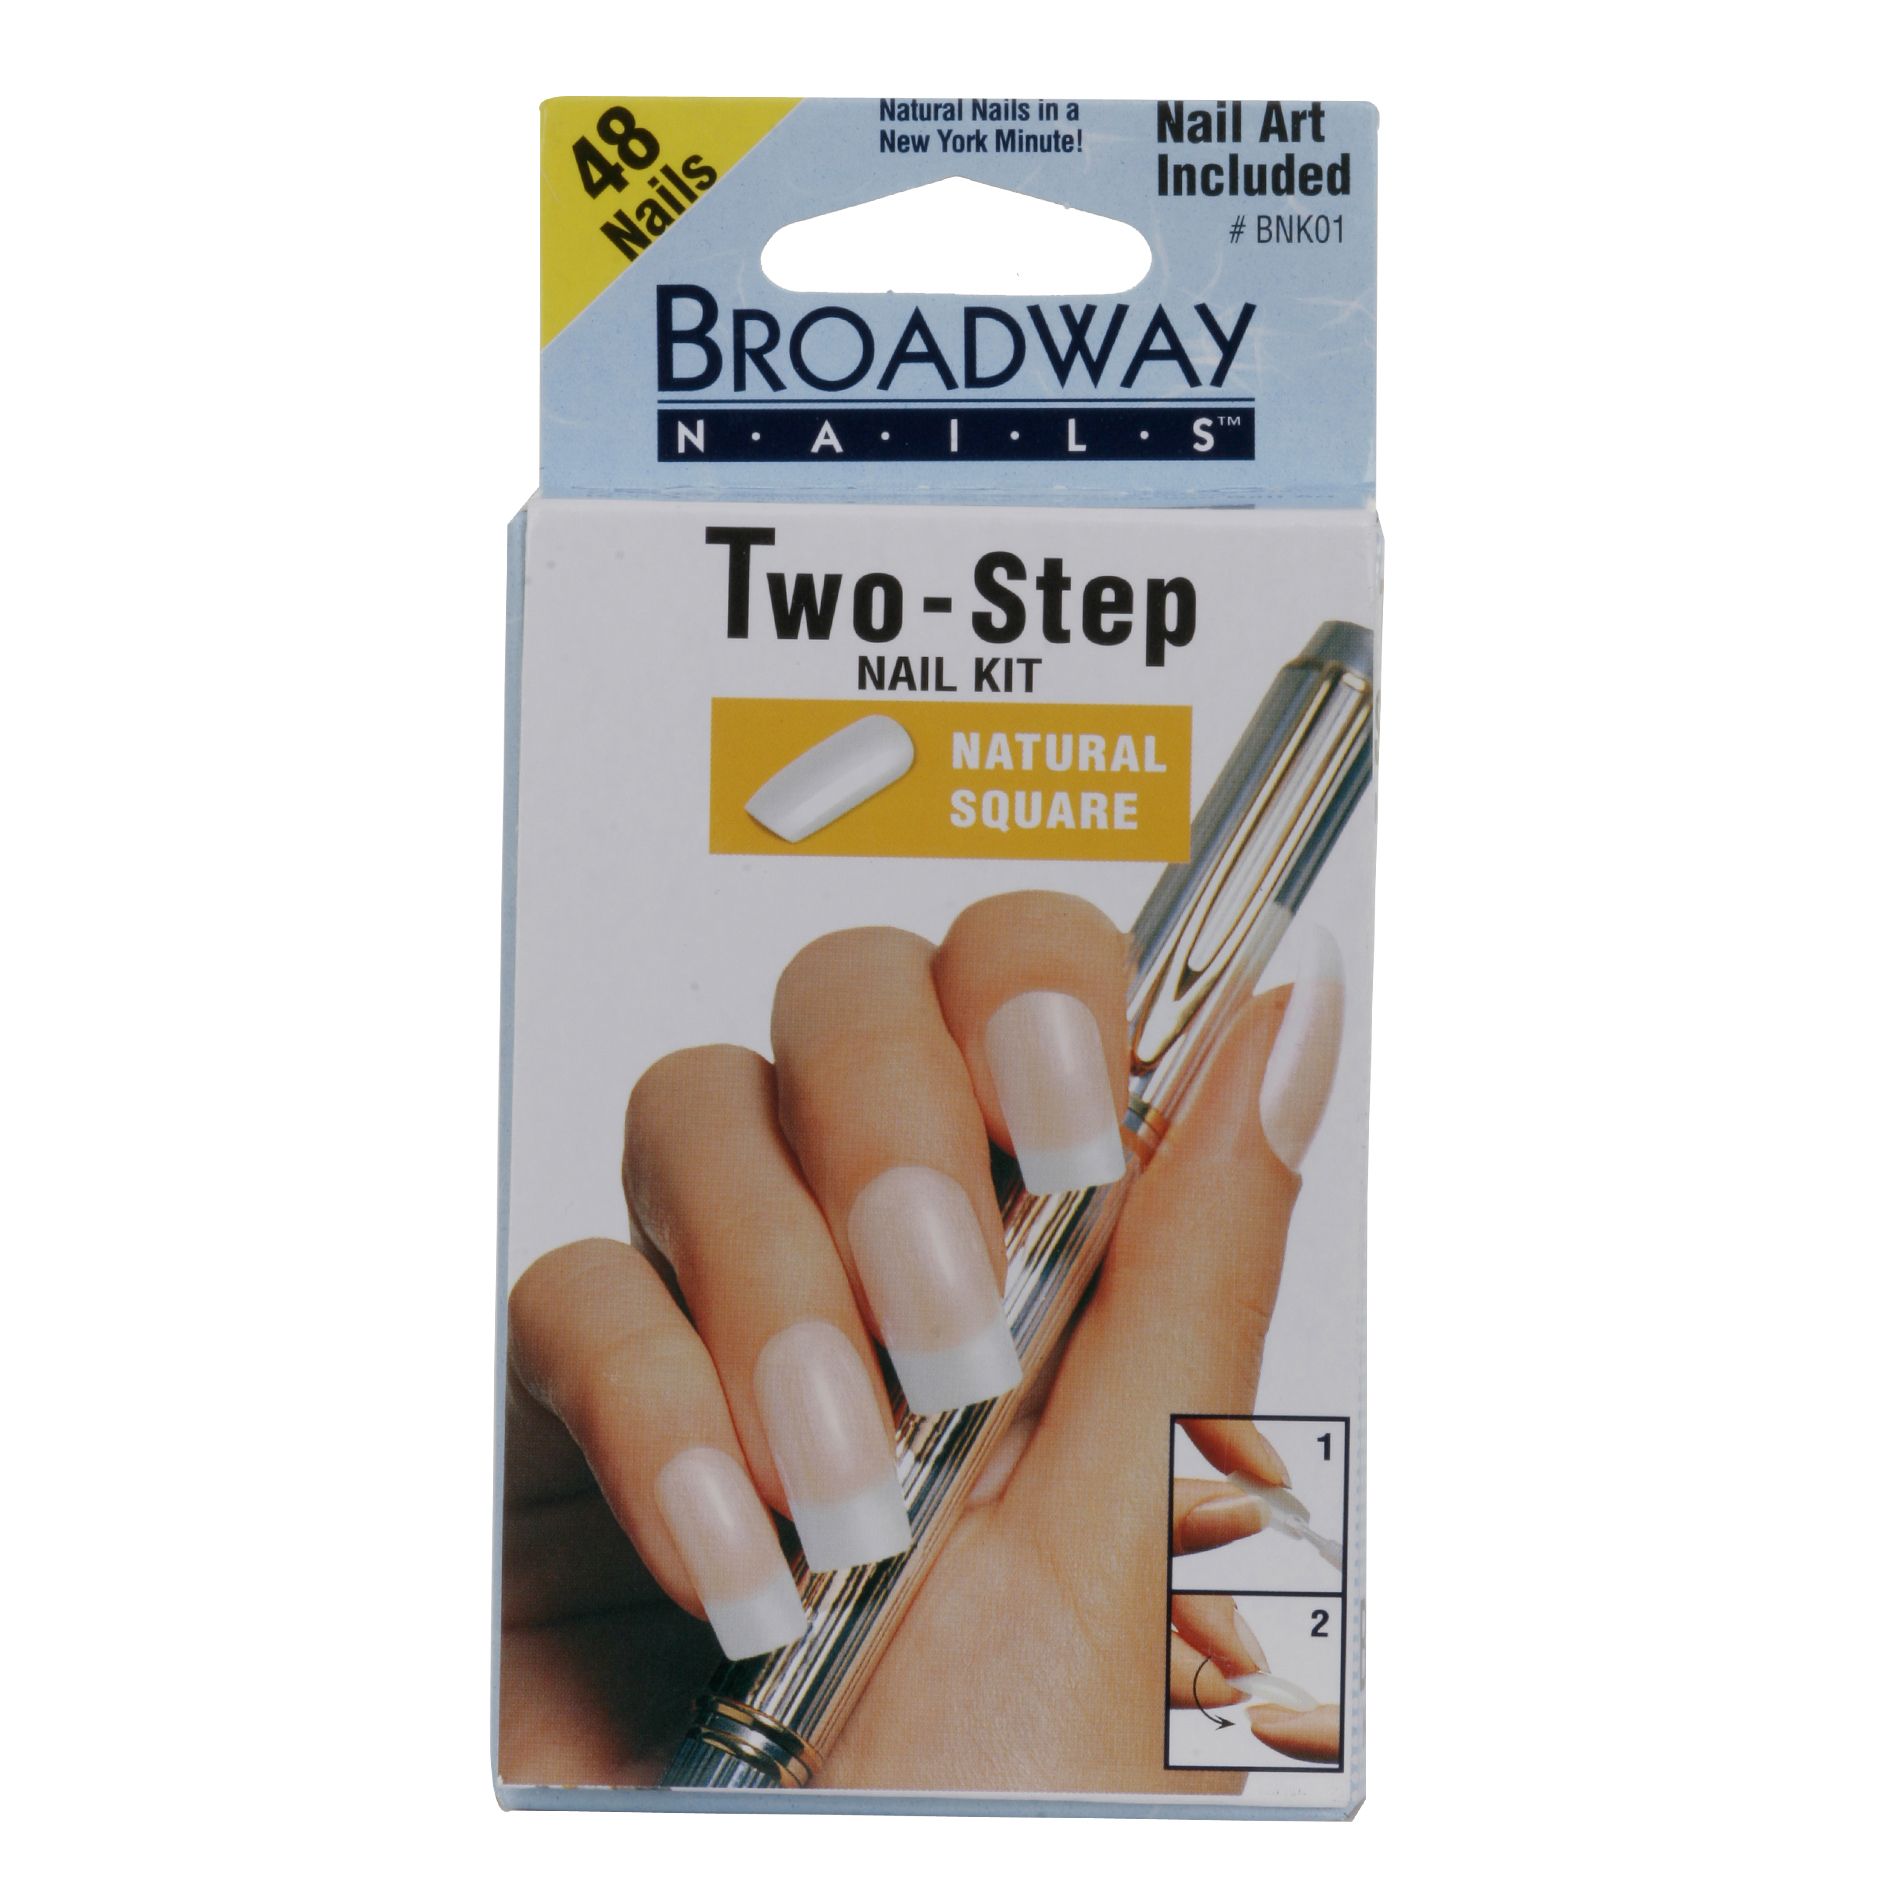 Broadway Nails 2 Step Nail Kit, Natural Square, Long, BNK01, 1 kit